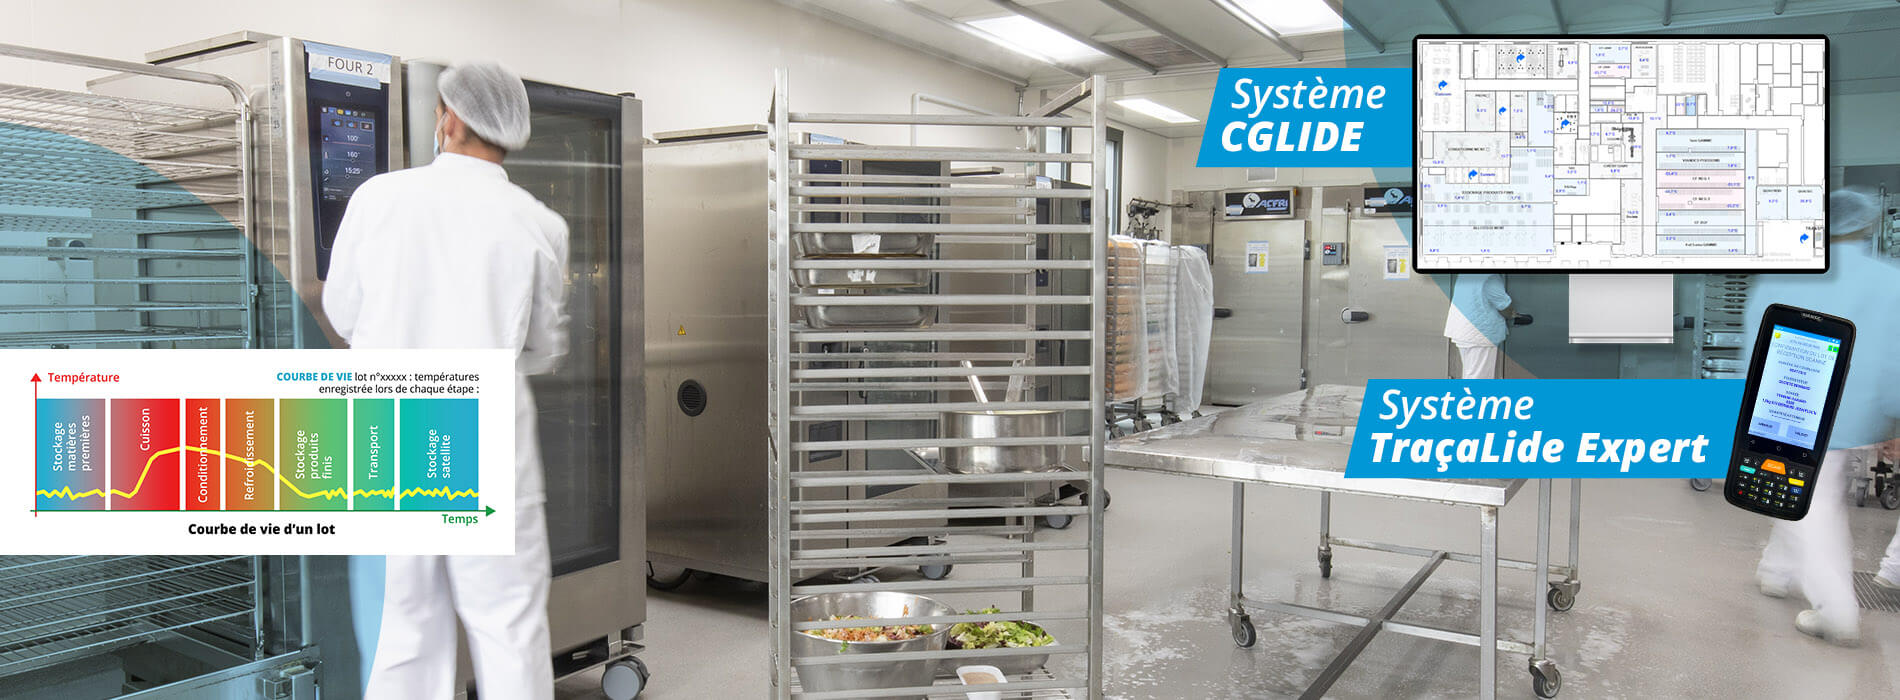 Photographie d'une cuisine avec des fours et des cellules de refroidissement présentant les solutions de supervision et de traçabilité